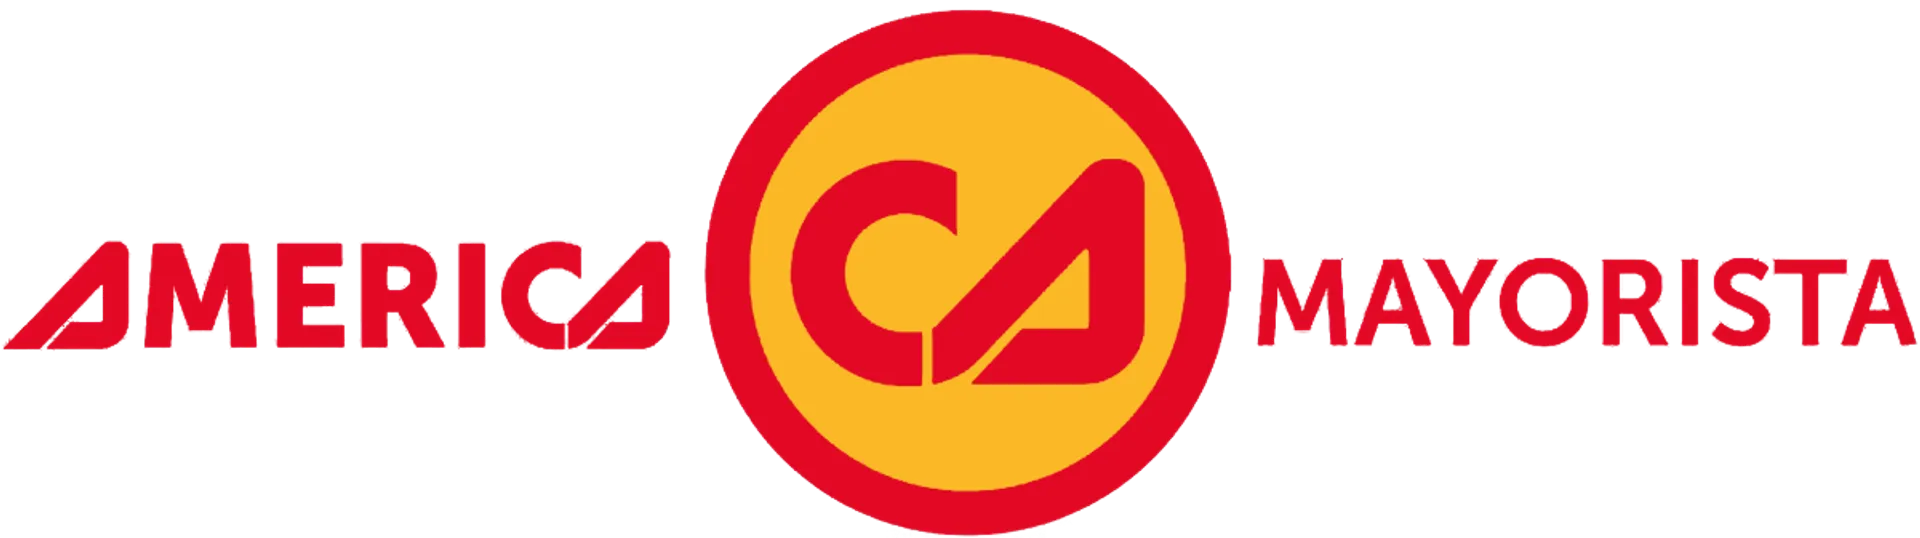 CAFÉ AMÉRICA MAYORISTA logo de catálogo